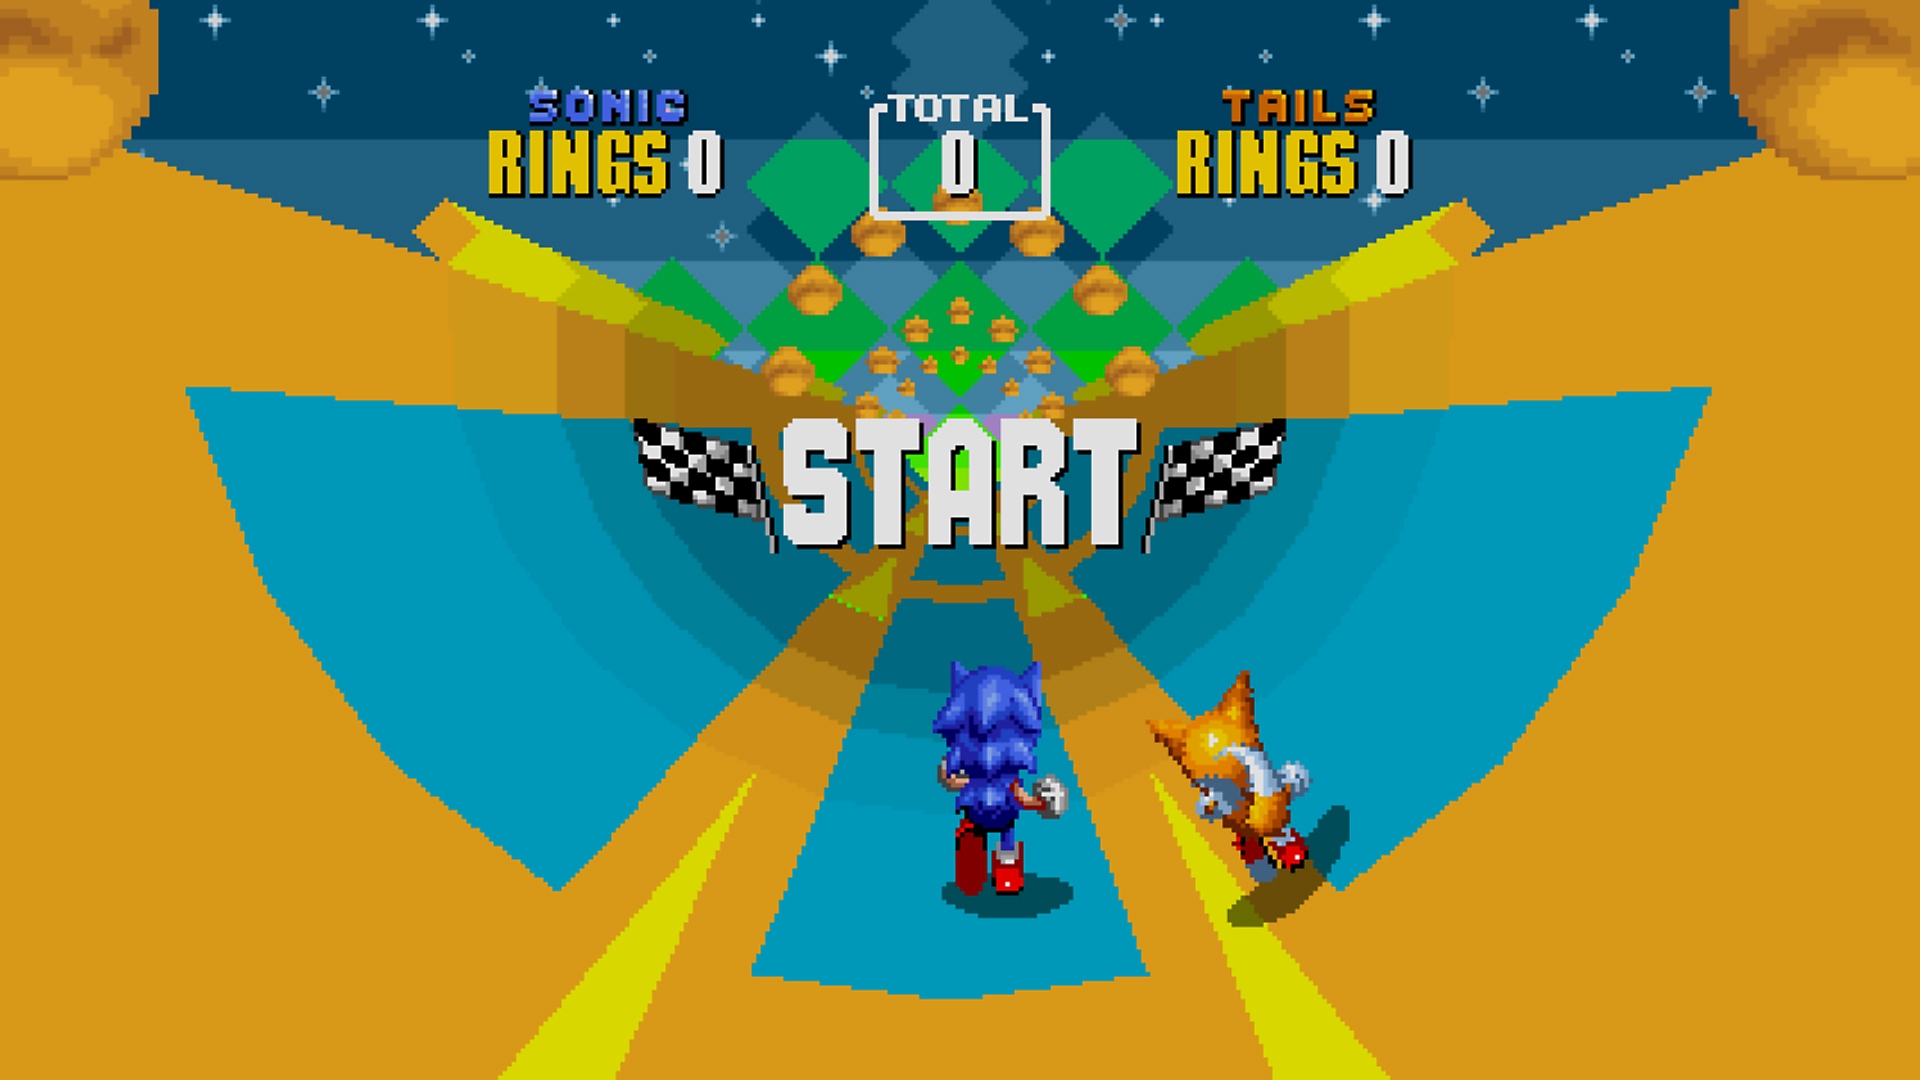 Snimka zaslona iz igre Sonic Origins koja prikazuje Sonica i Tailsa kako trče razinom